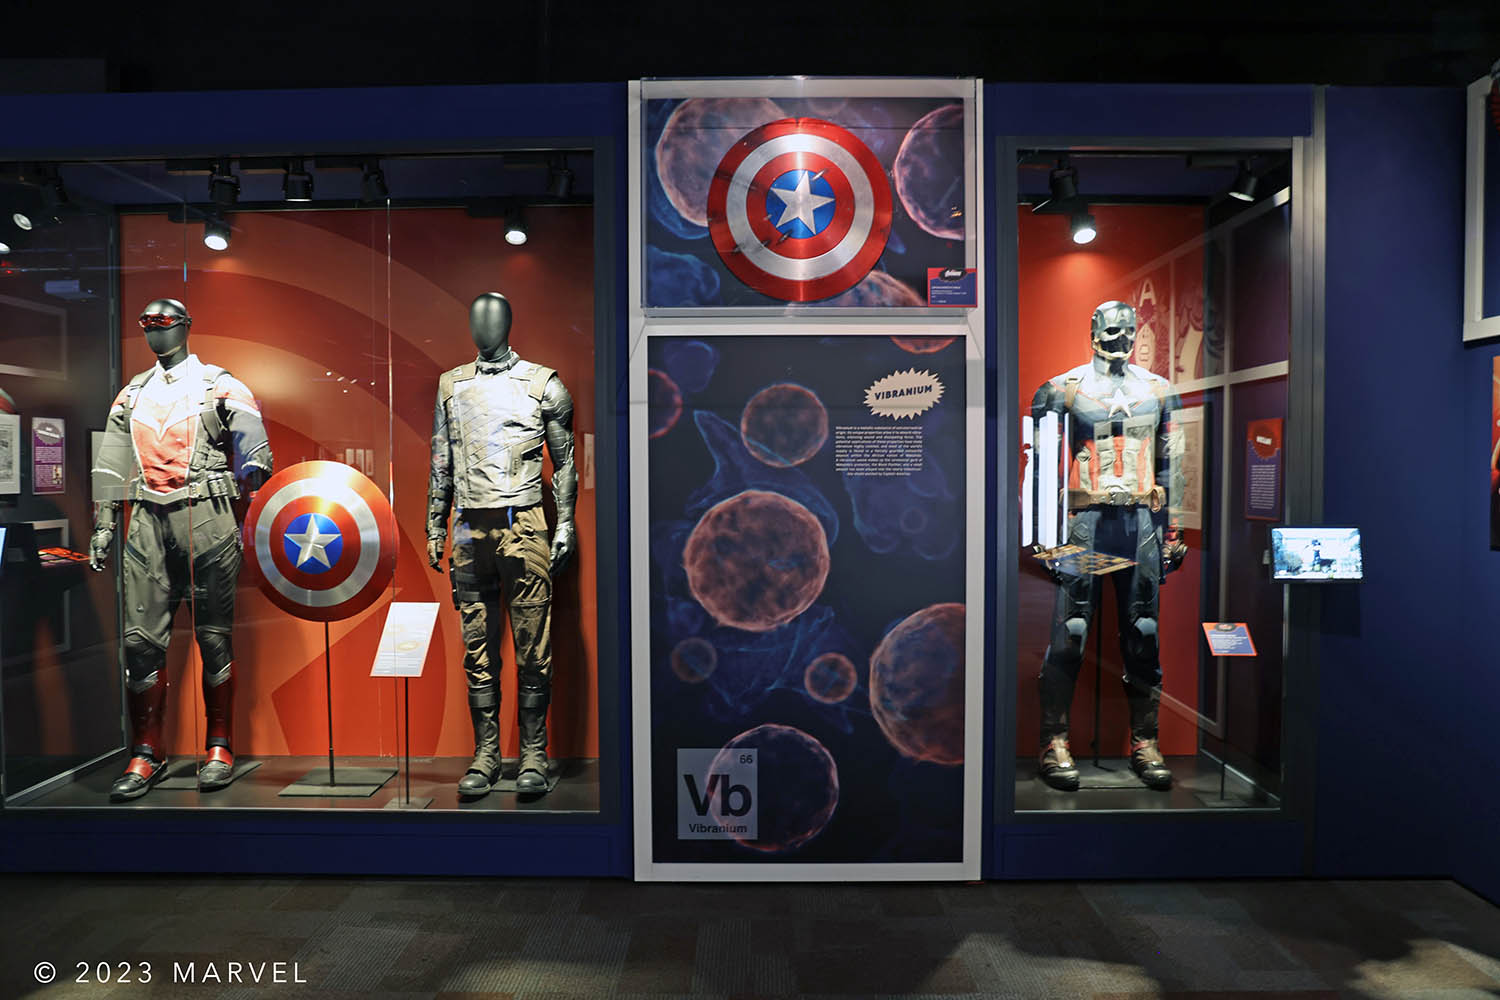 Captain America and Vibranium